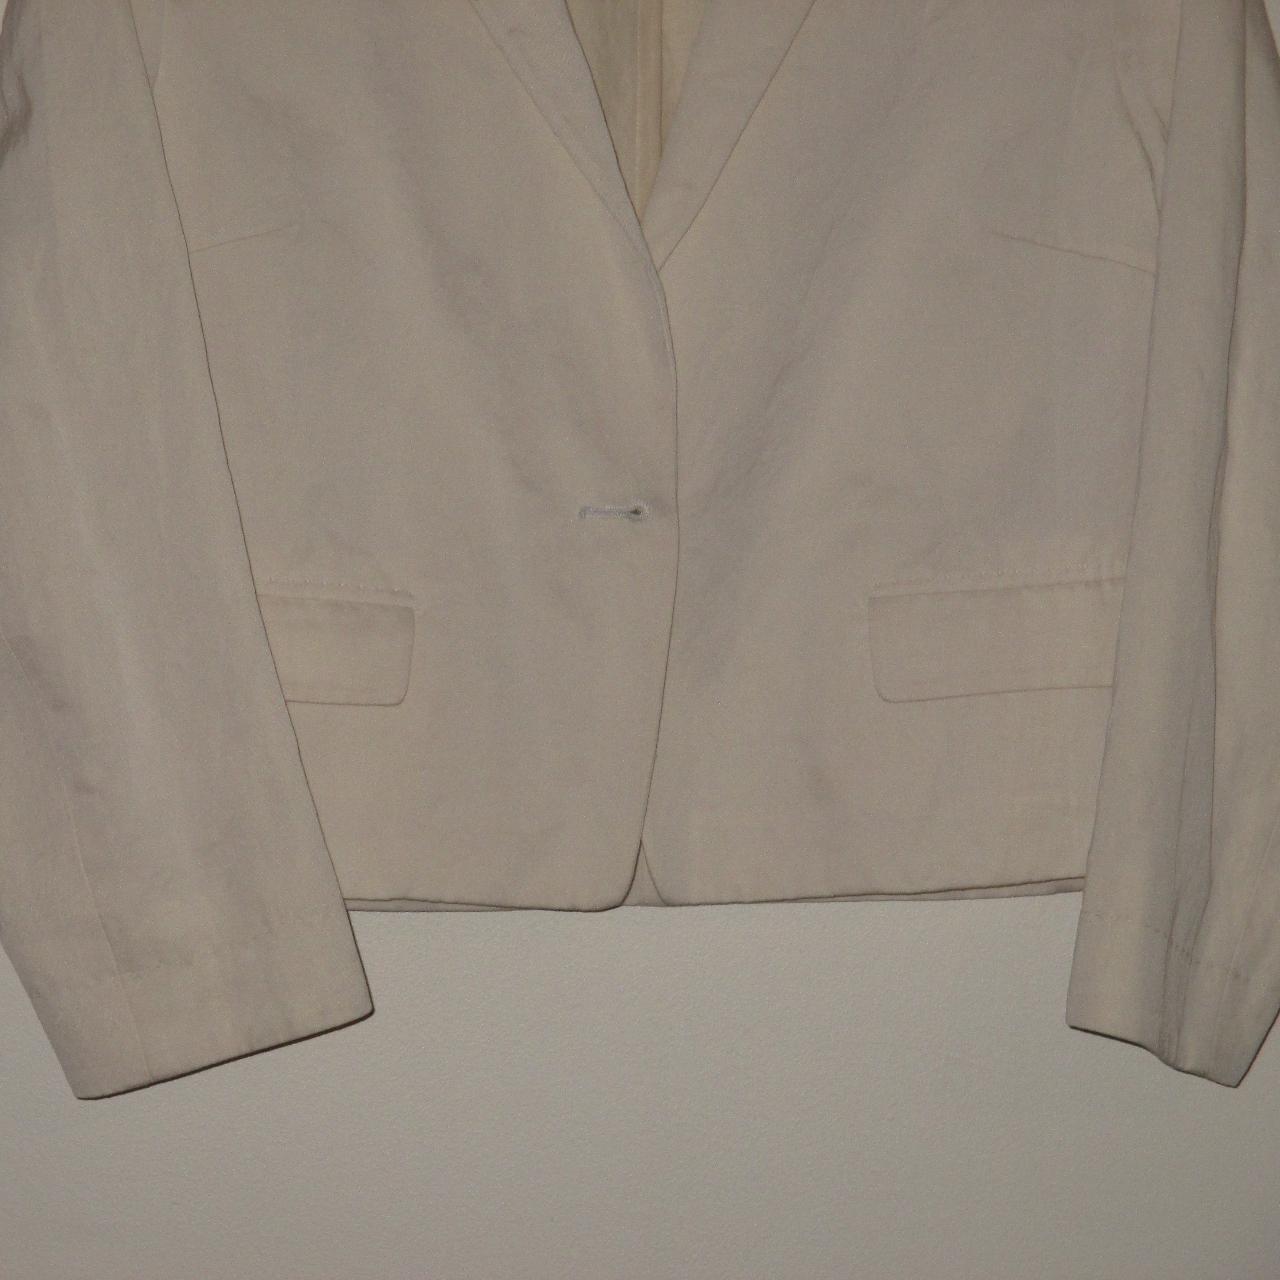 Dries Van Noten Women's White Jacket (3)